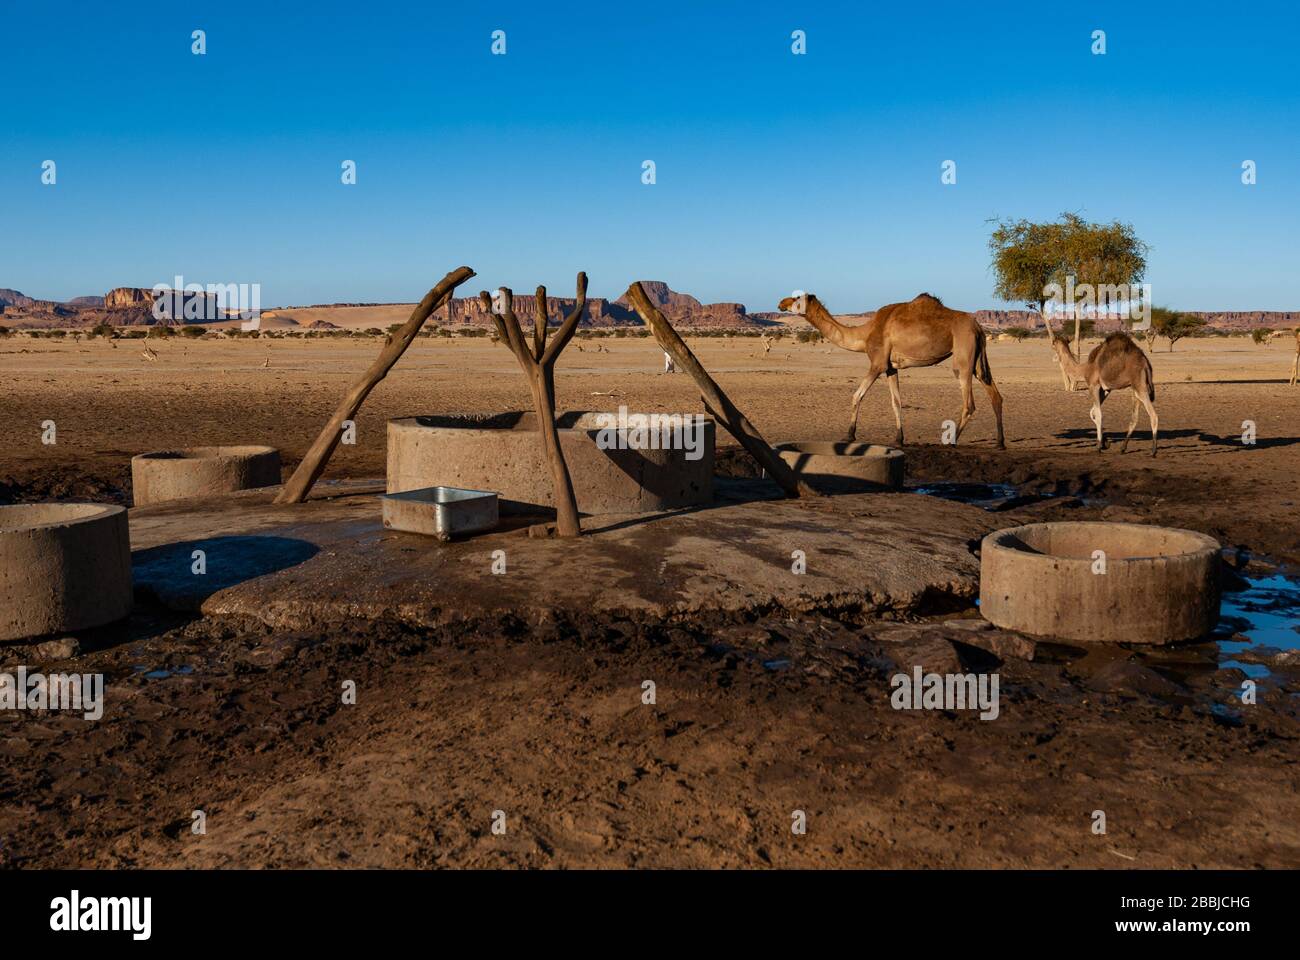 Les chameaux s'approchent du puits dans l'oasis du désert. Désert du Sahara, Tchad, Afrique. Banque D'Images